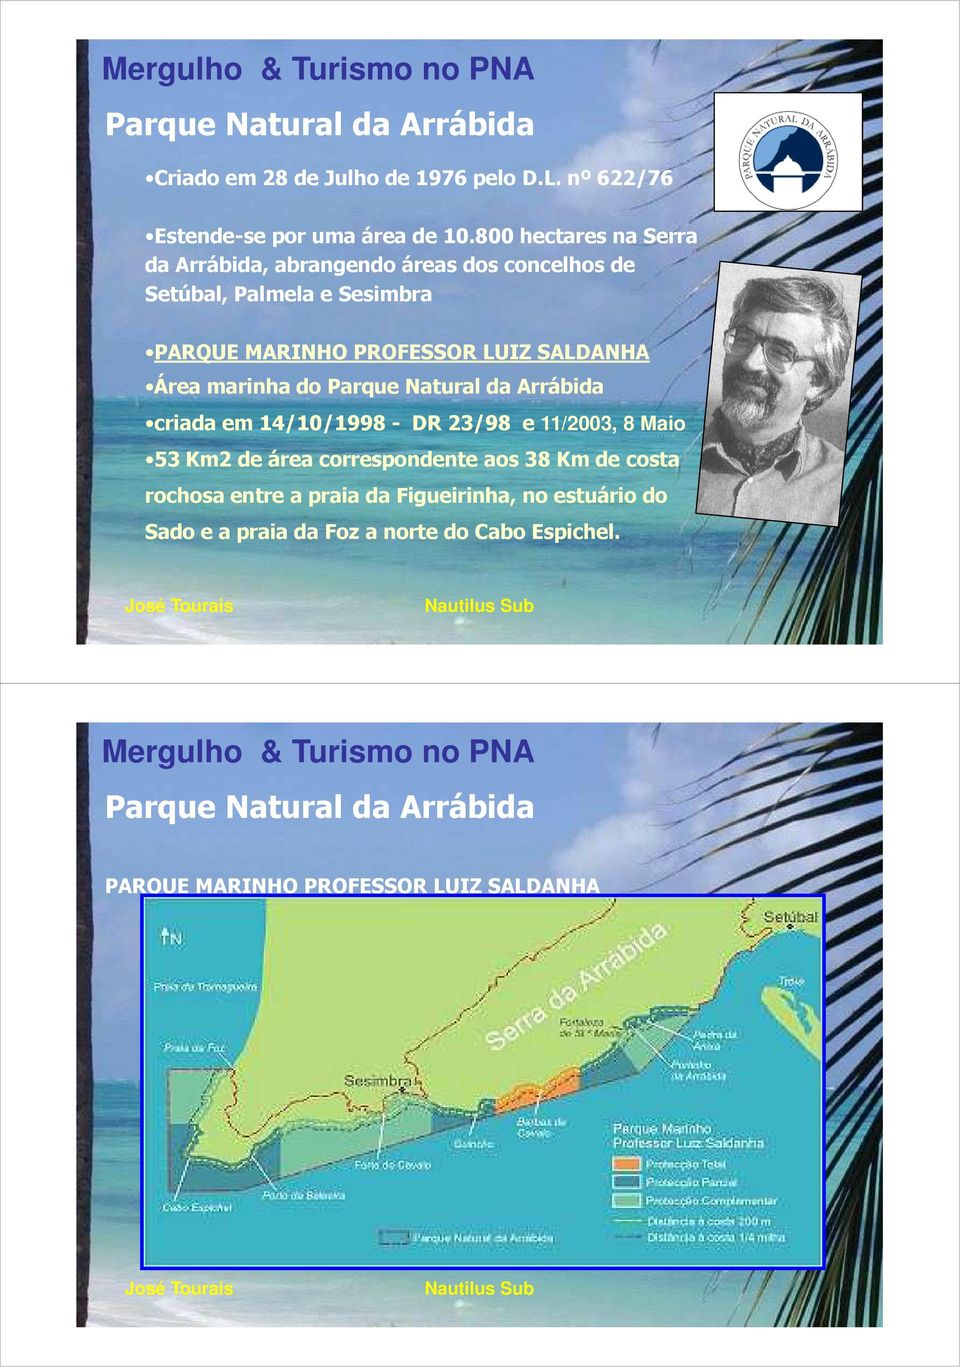 Área marinha do Parque Natural da Arrábida criada em 14/10/1998 - DR 23/98 e 11/2003, 8 Maio 53 Km2 de área correspondente aos 38 Km de